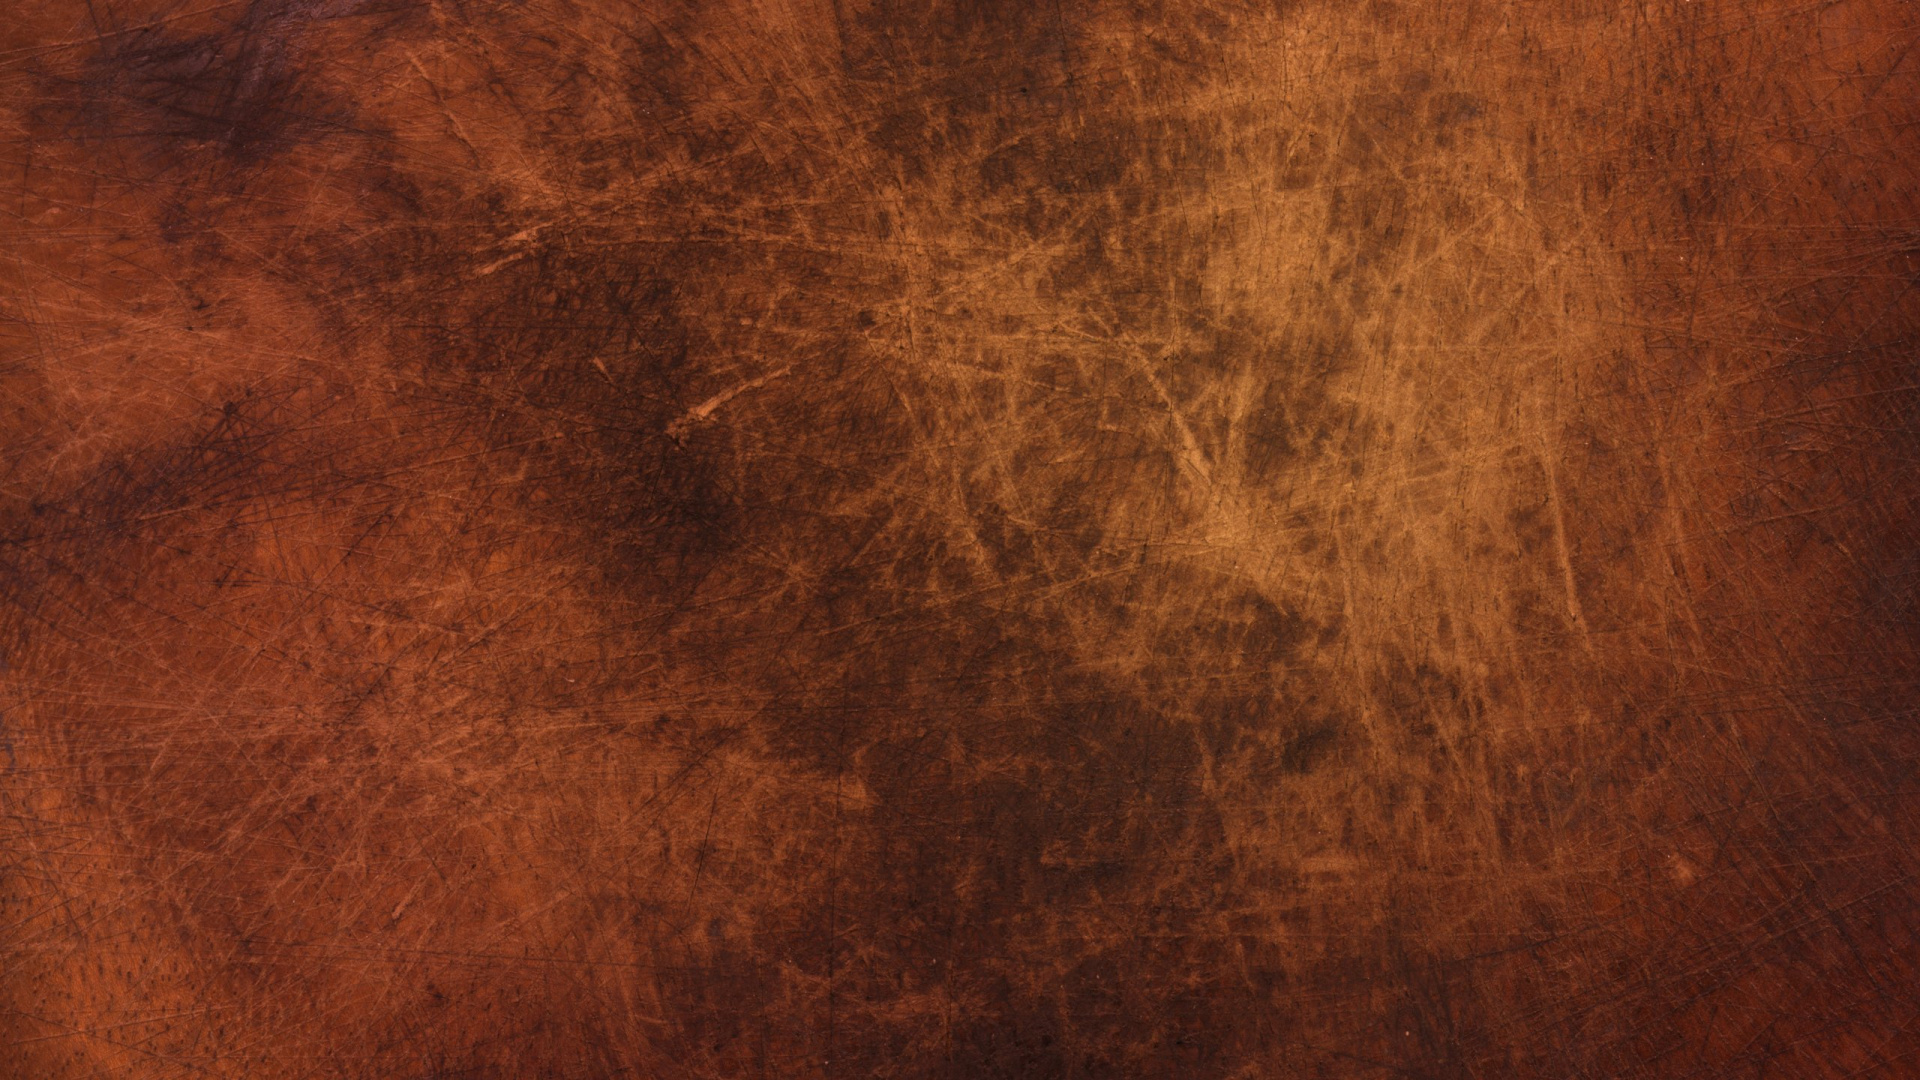 Copper rust цвет фото 110